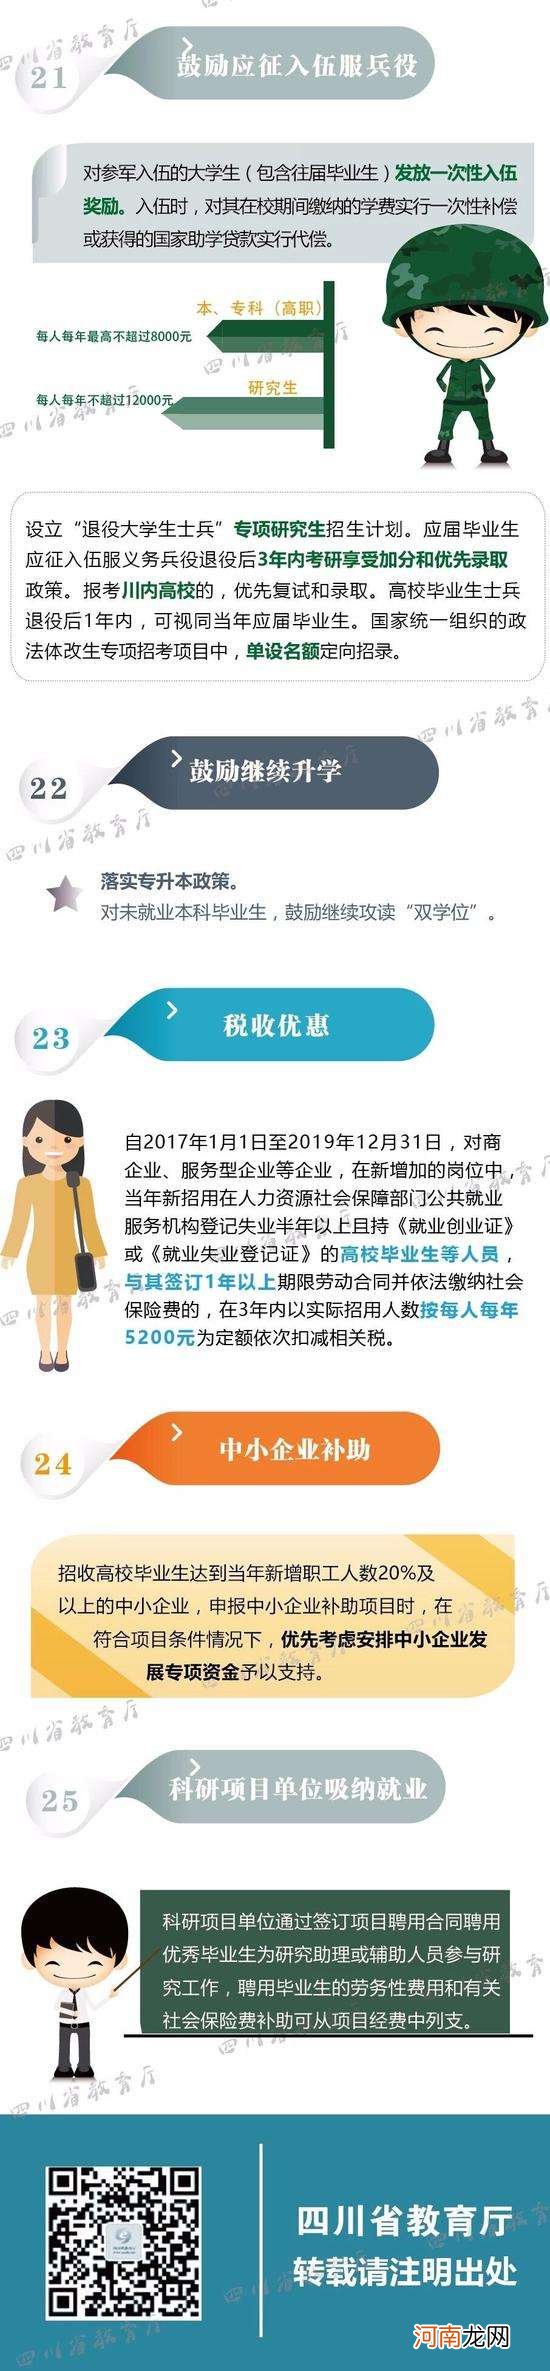 四川科技创业政策扶持 四川省创业补贴申请条件